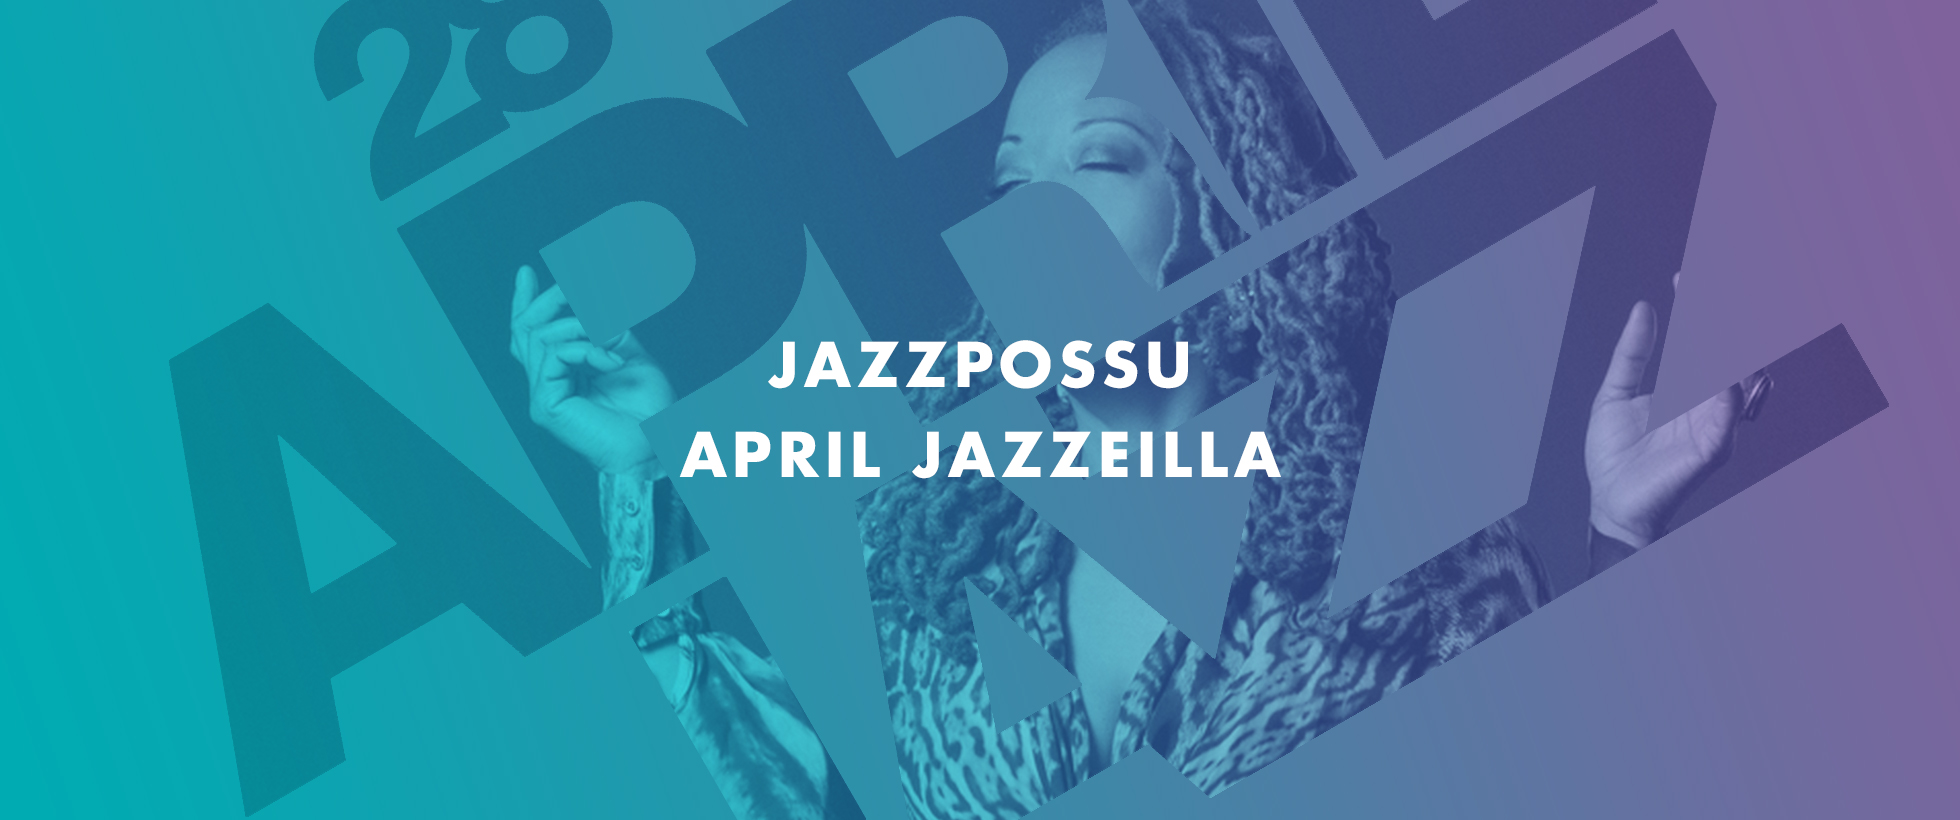 April Jazz 2014 – 1. päivä – Cassandra Wilson Finlandia-talolla